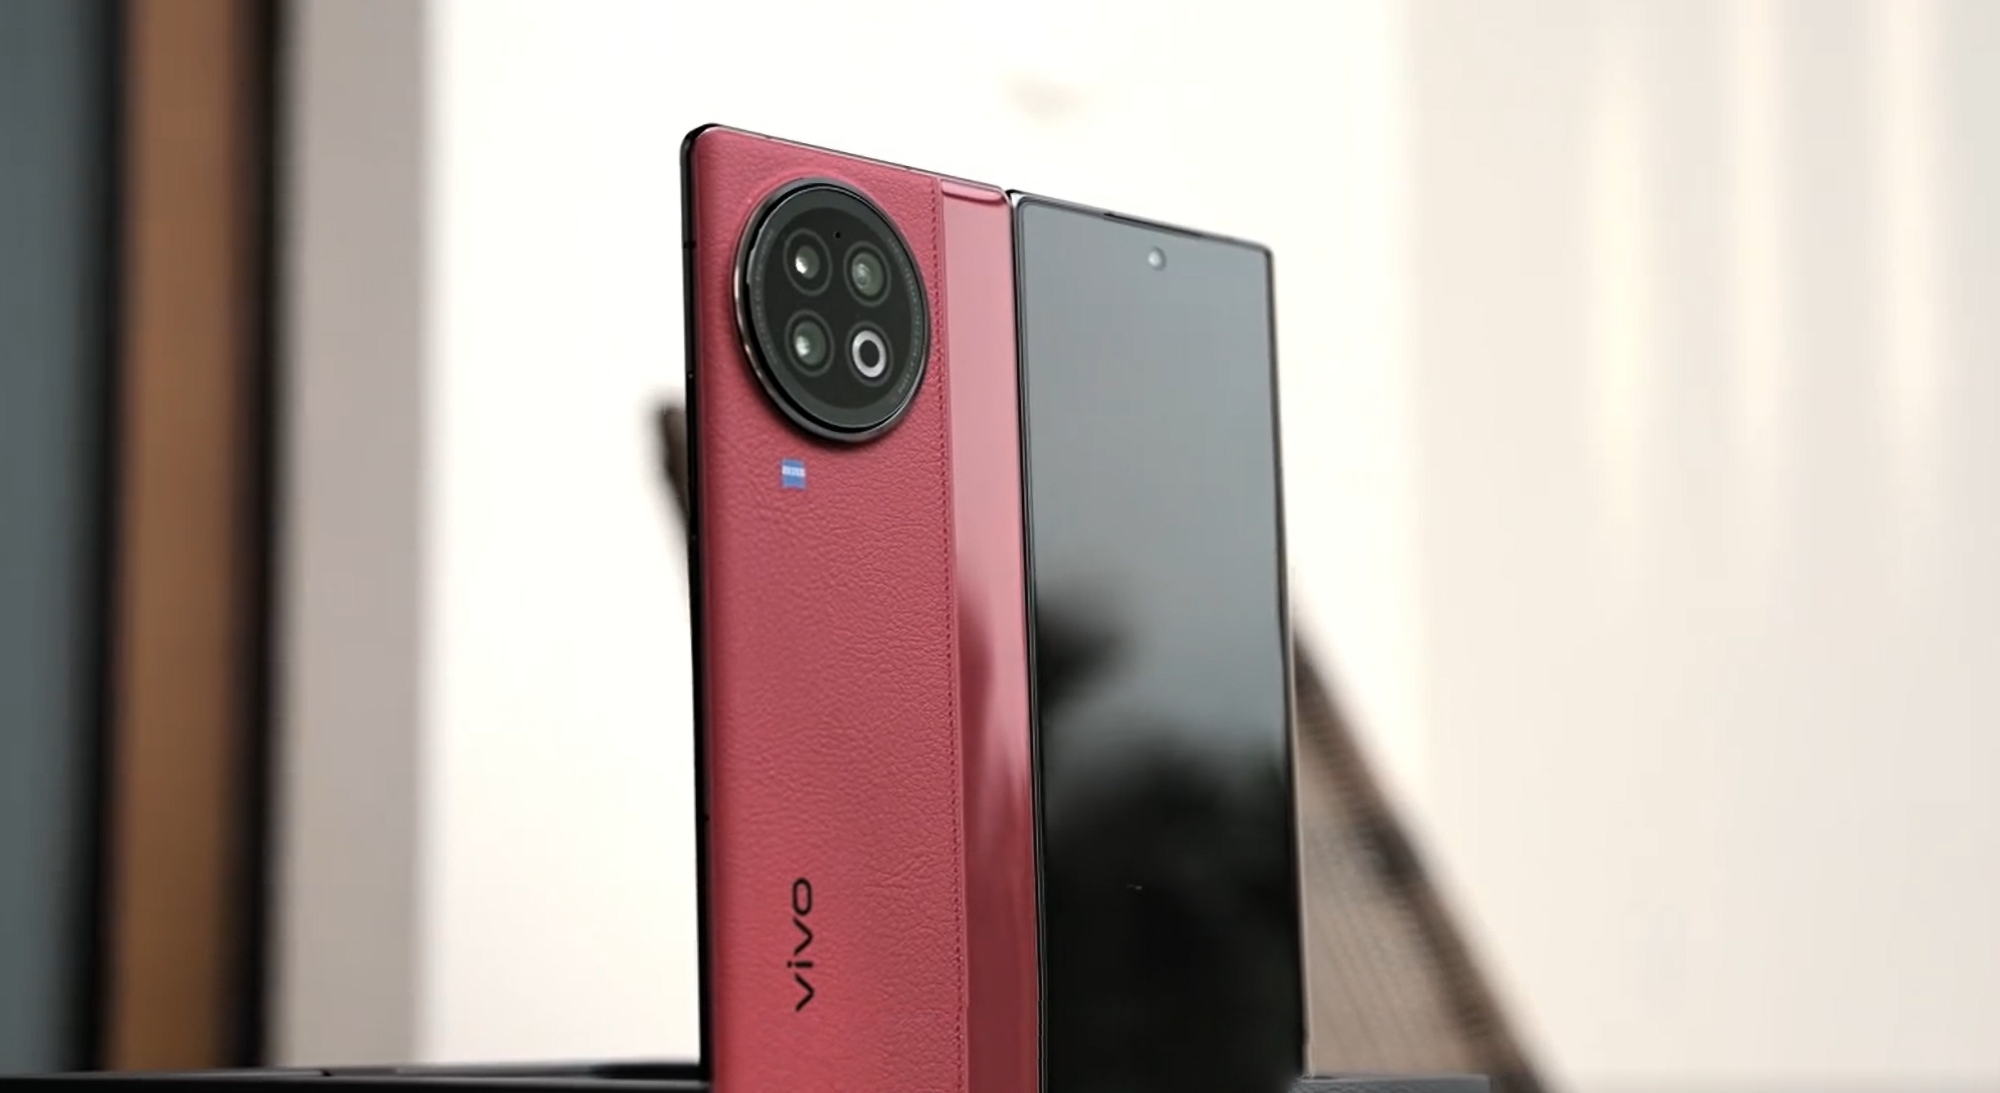 W sieci pojawiło się wideo z unboxingu smartfona vivo X Fold 2: dwa wyświetlacze, aparat Zeiss i kolor czerwony